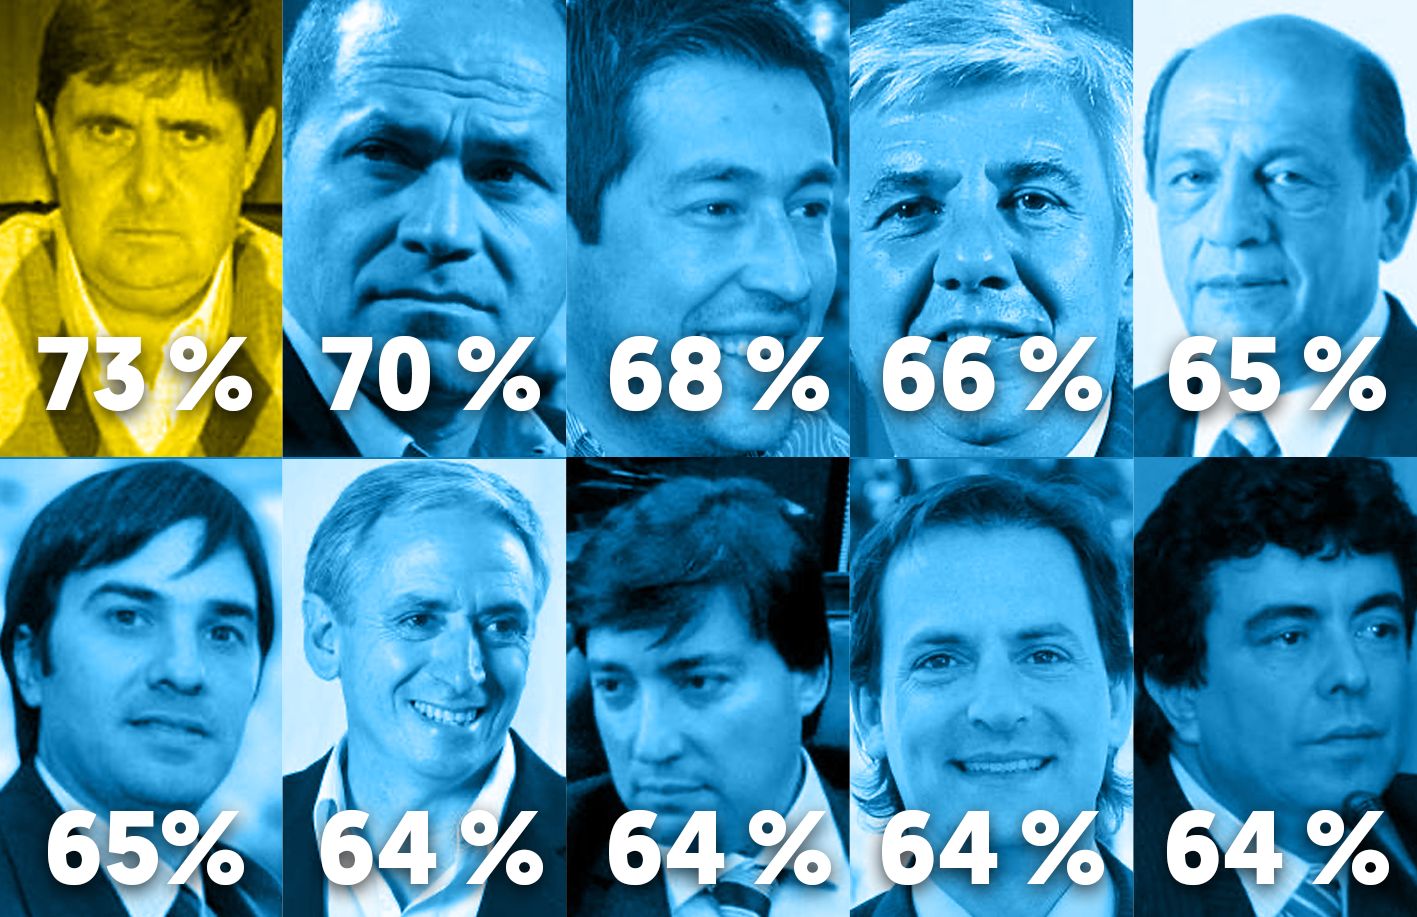 Top Ten: Los candidatos a intendente que sacaron mayor porcentaje de votos en la Provincia